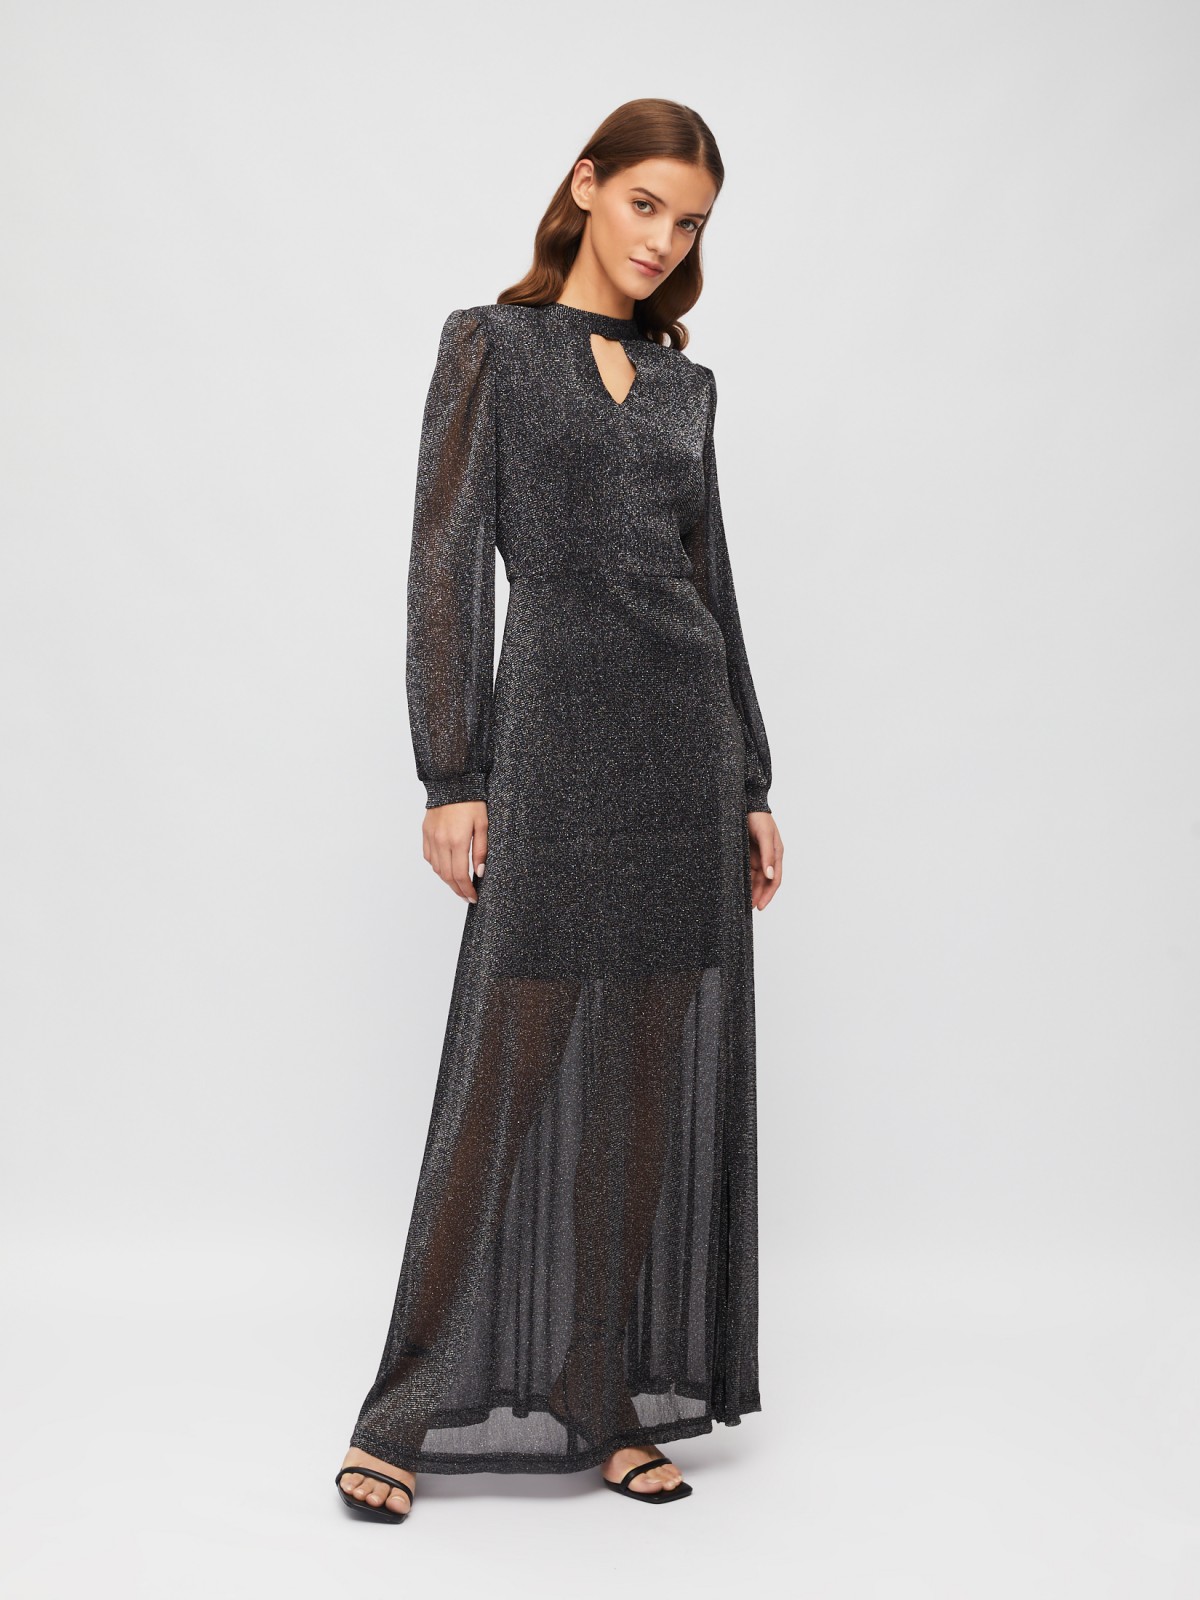 Полупрозрачное платье макси с разрезом на подоле и люрексом zolla 023458159233, цвет черный, размер S - фото 1